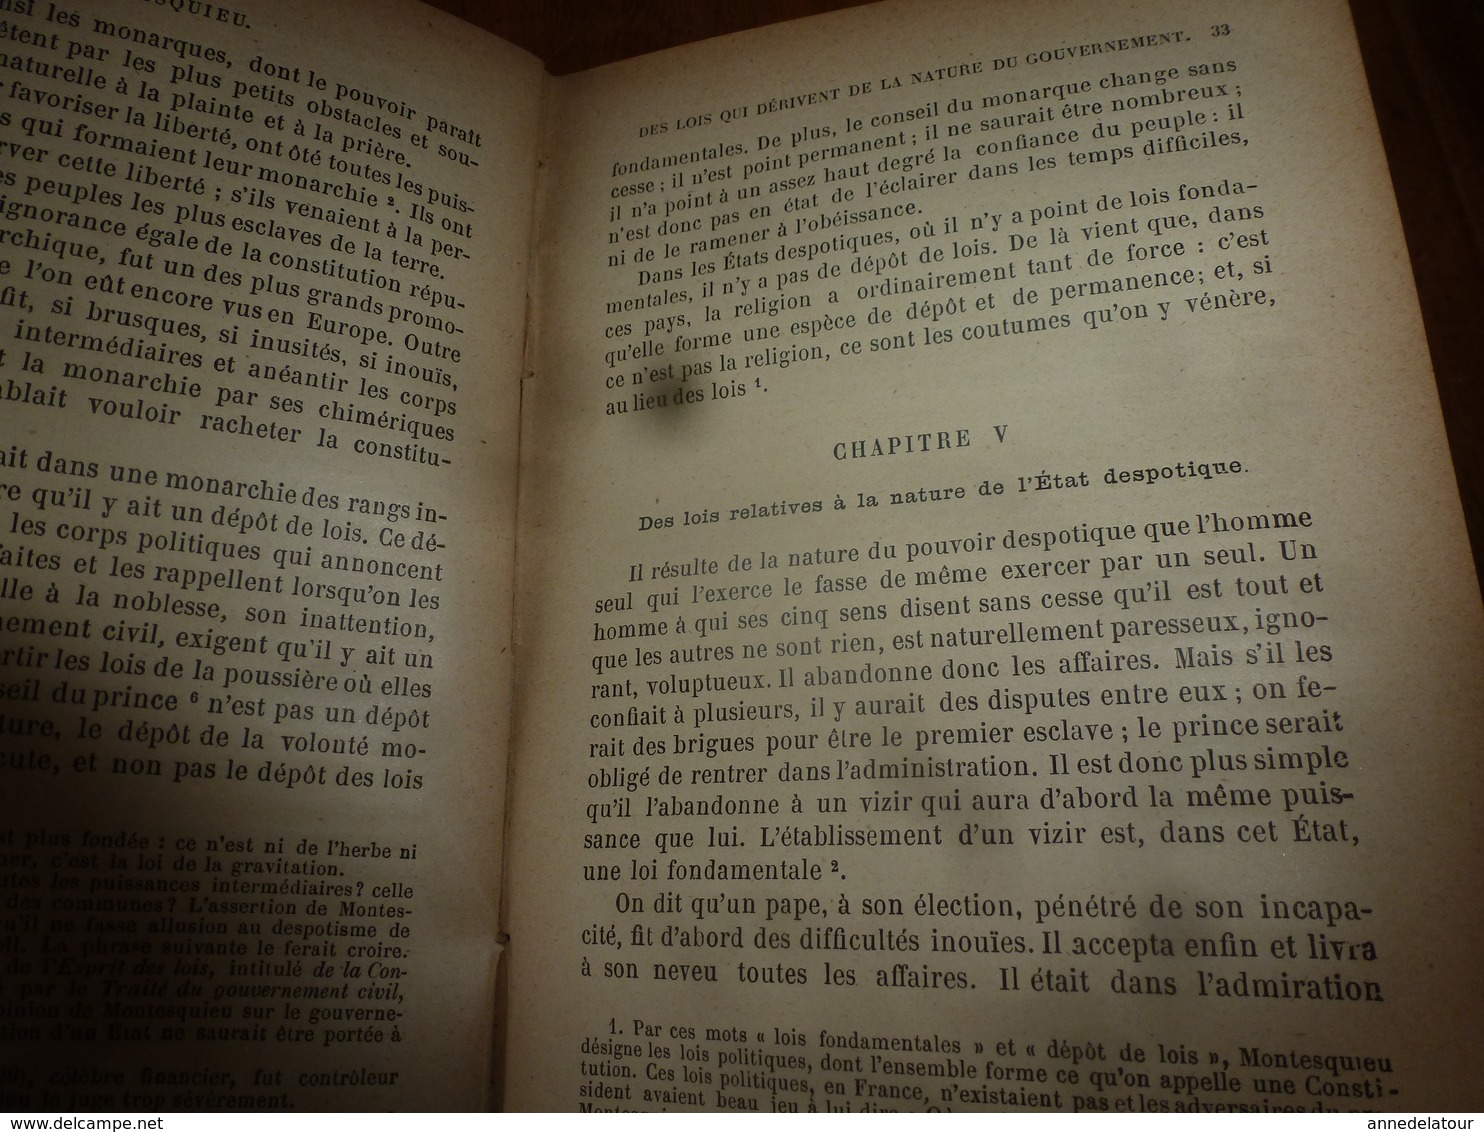 1887 Montesquieu  (Esprit des lois)  par Edgar Zevort